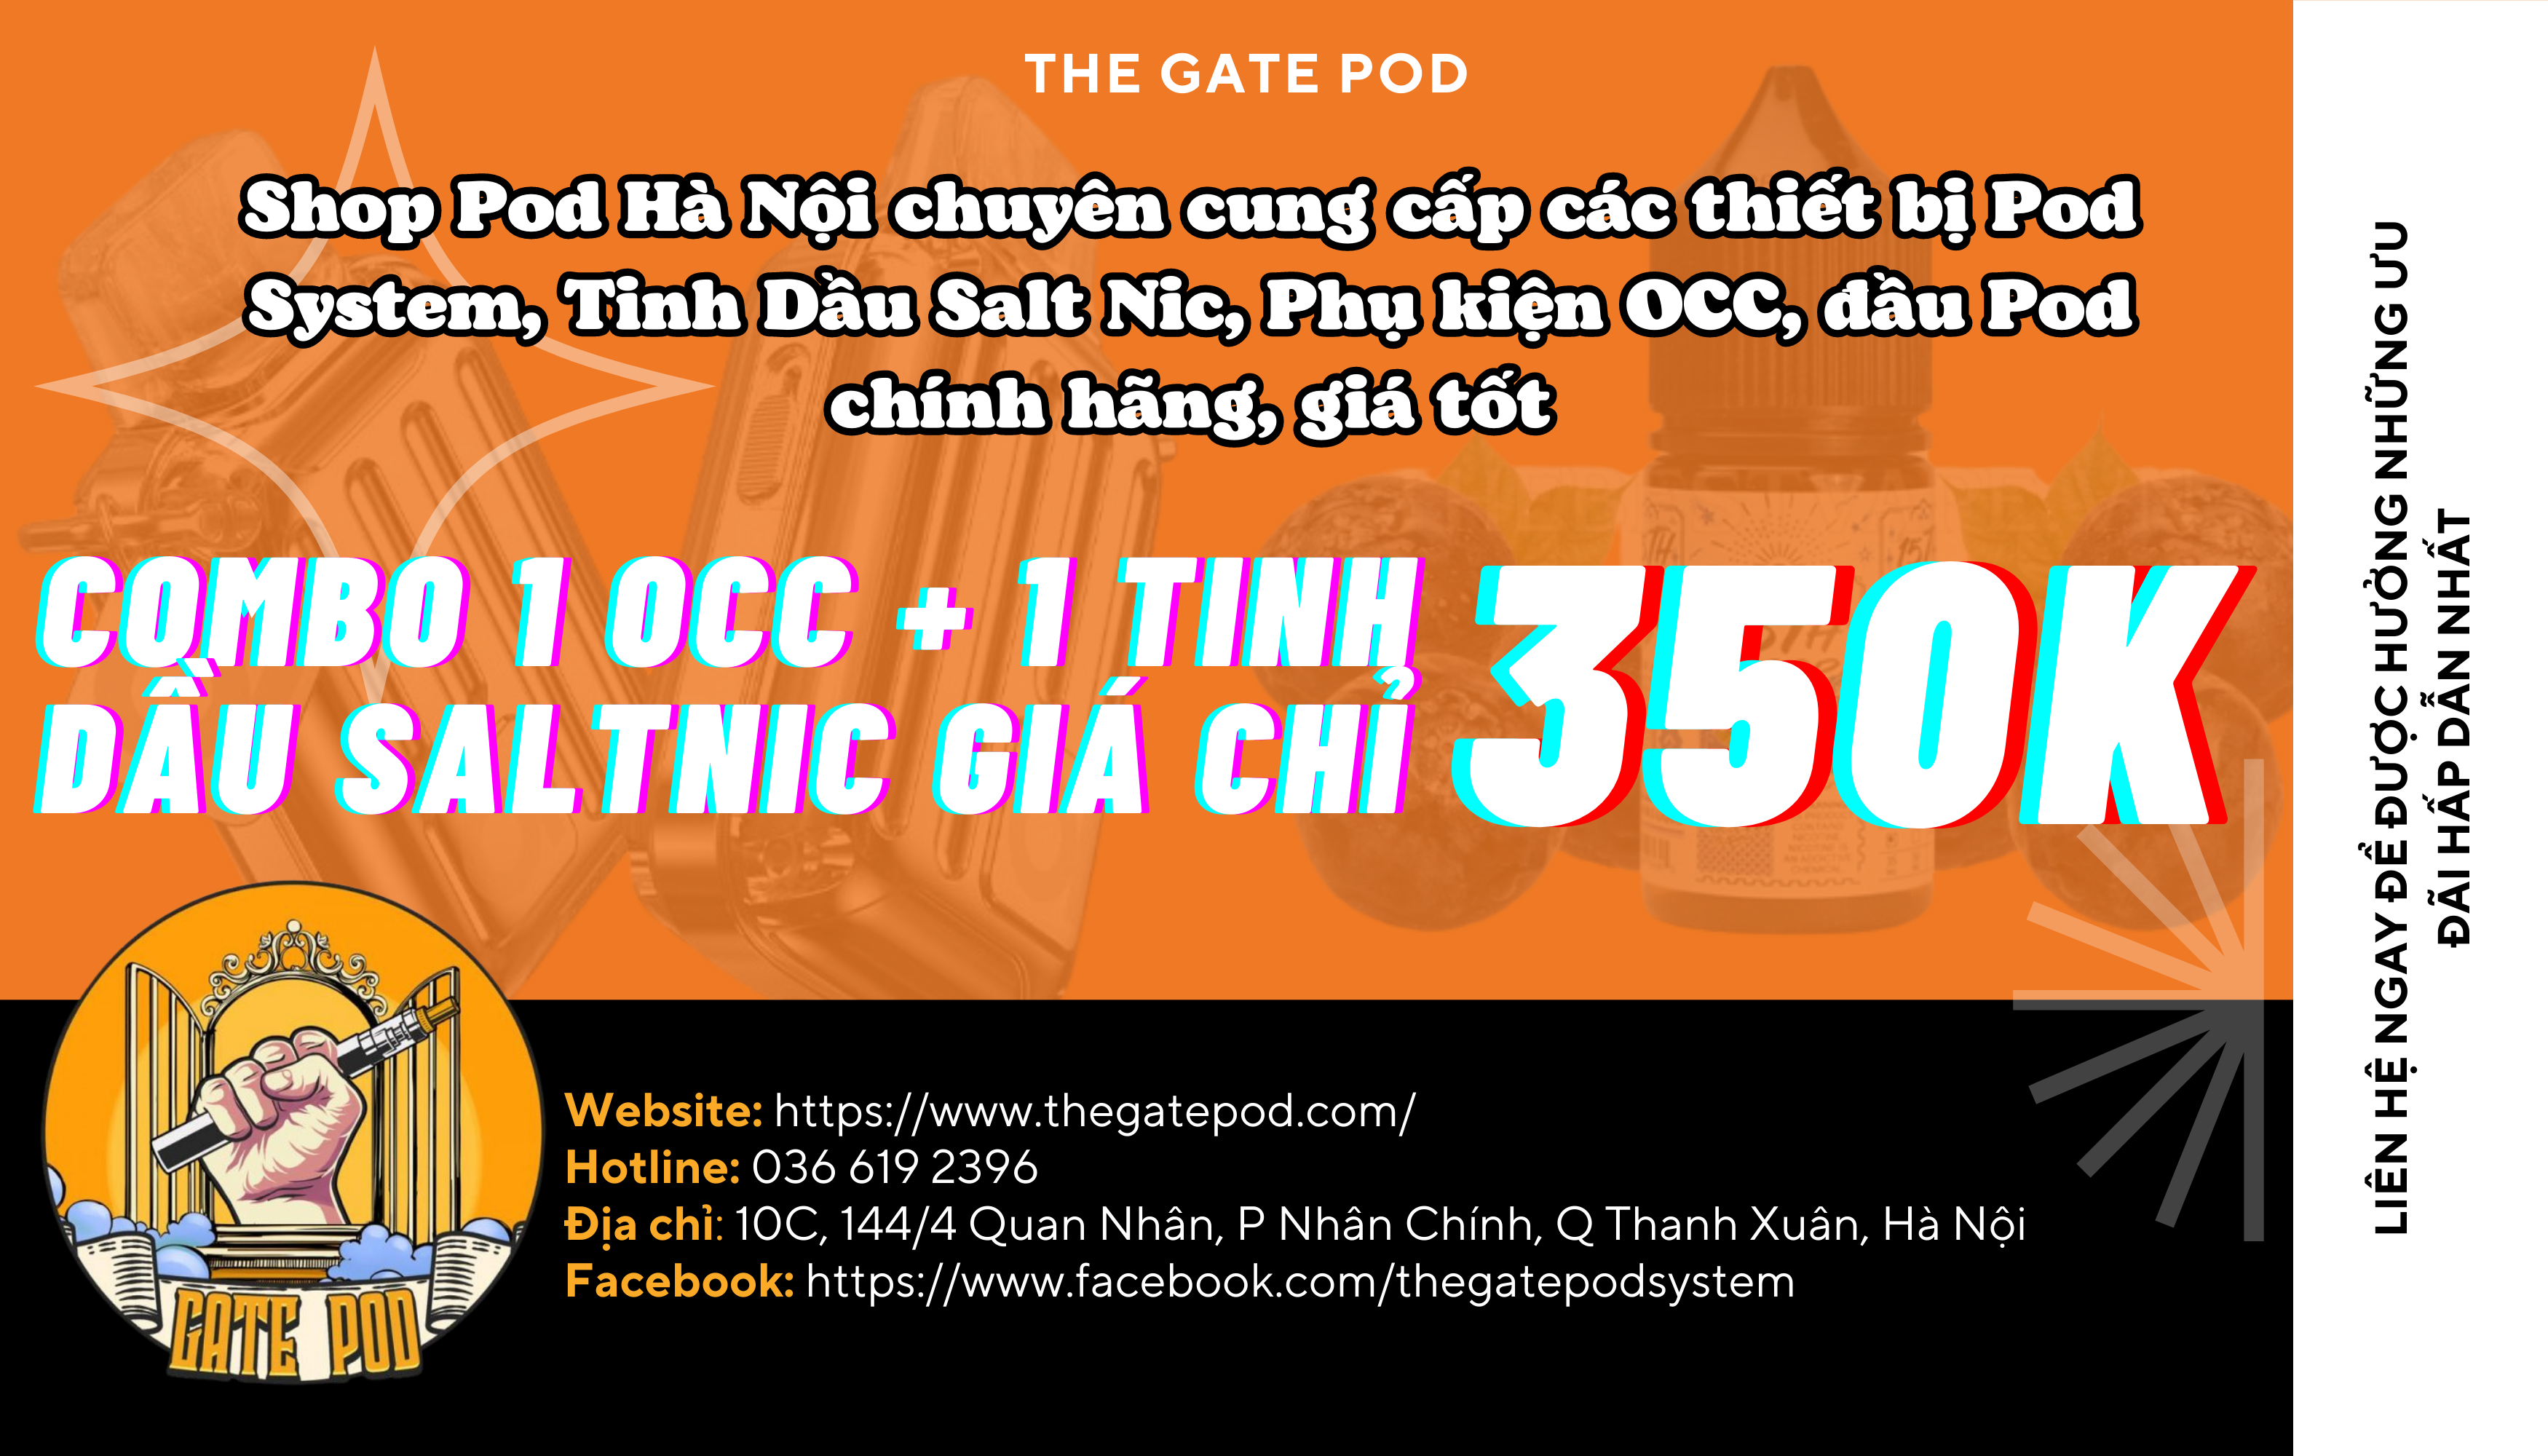 The Gate Pod - Shop pod quận Thanh Xuân uy tín, giá rẻ, freeship